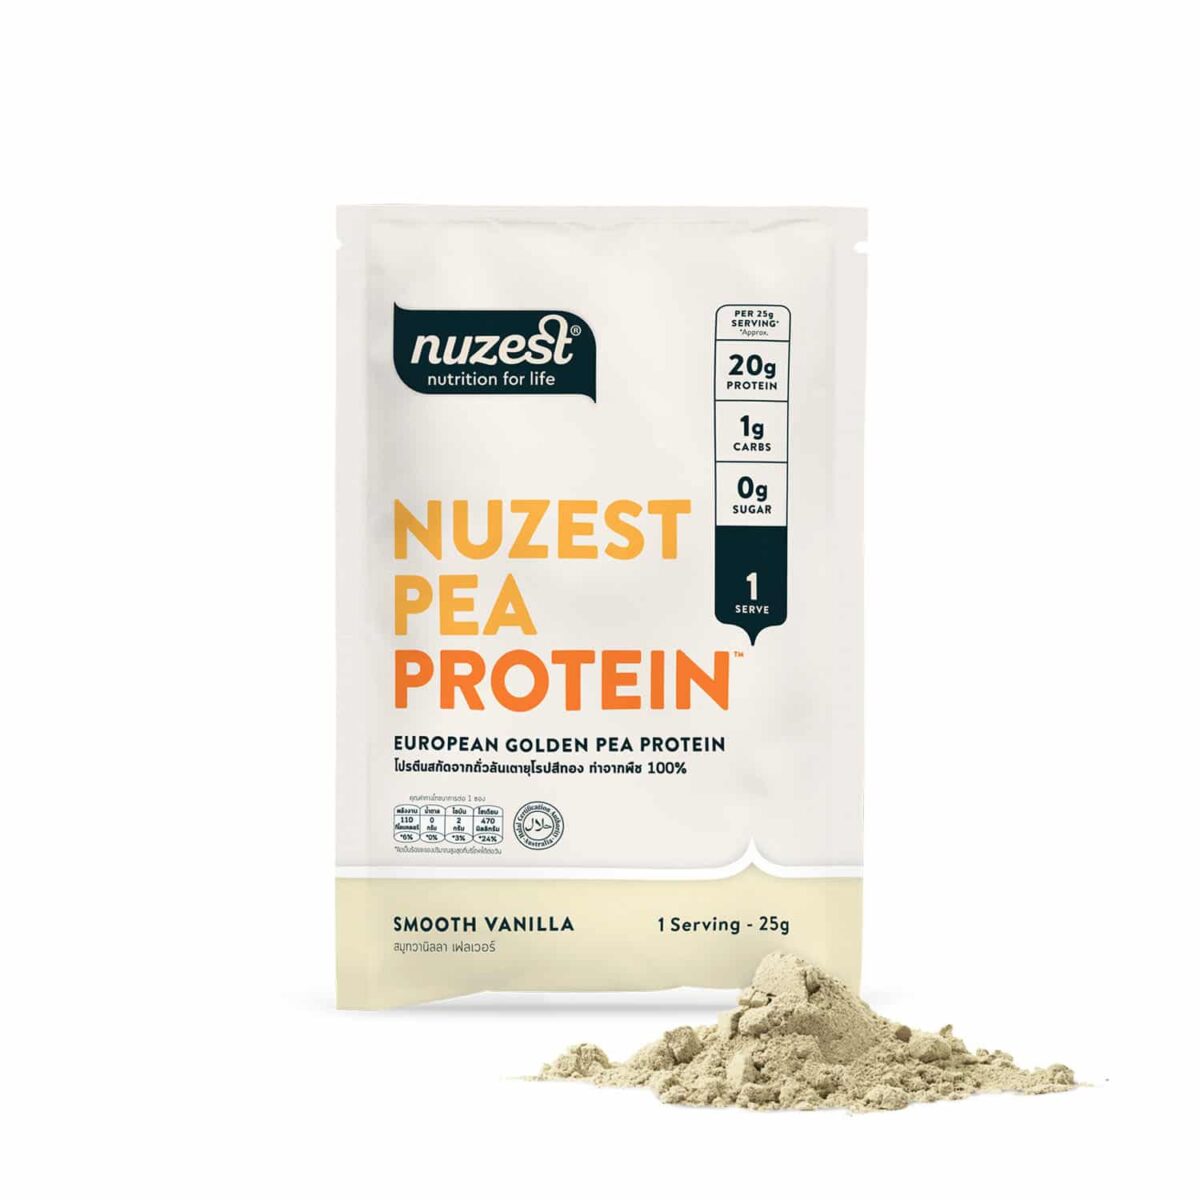 nuzest pea protein ราคา protein